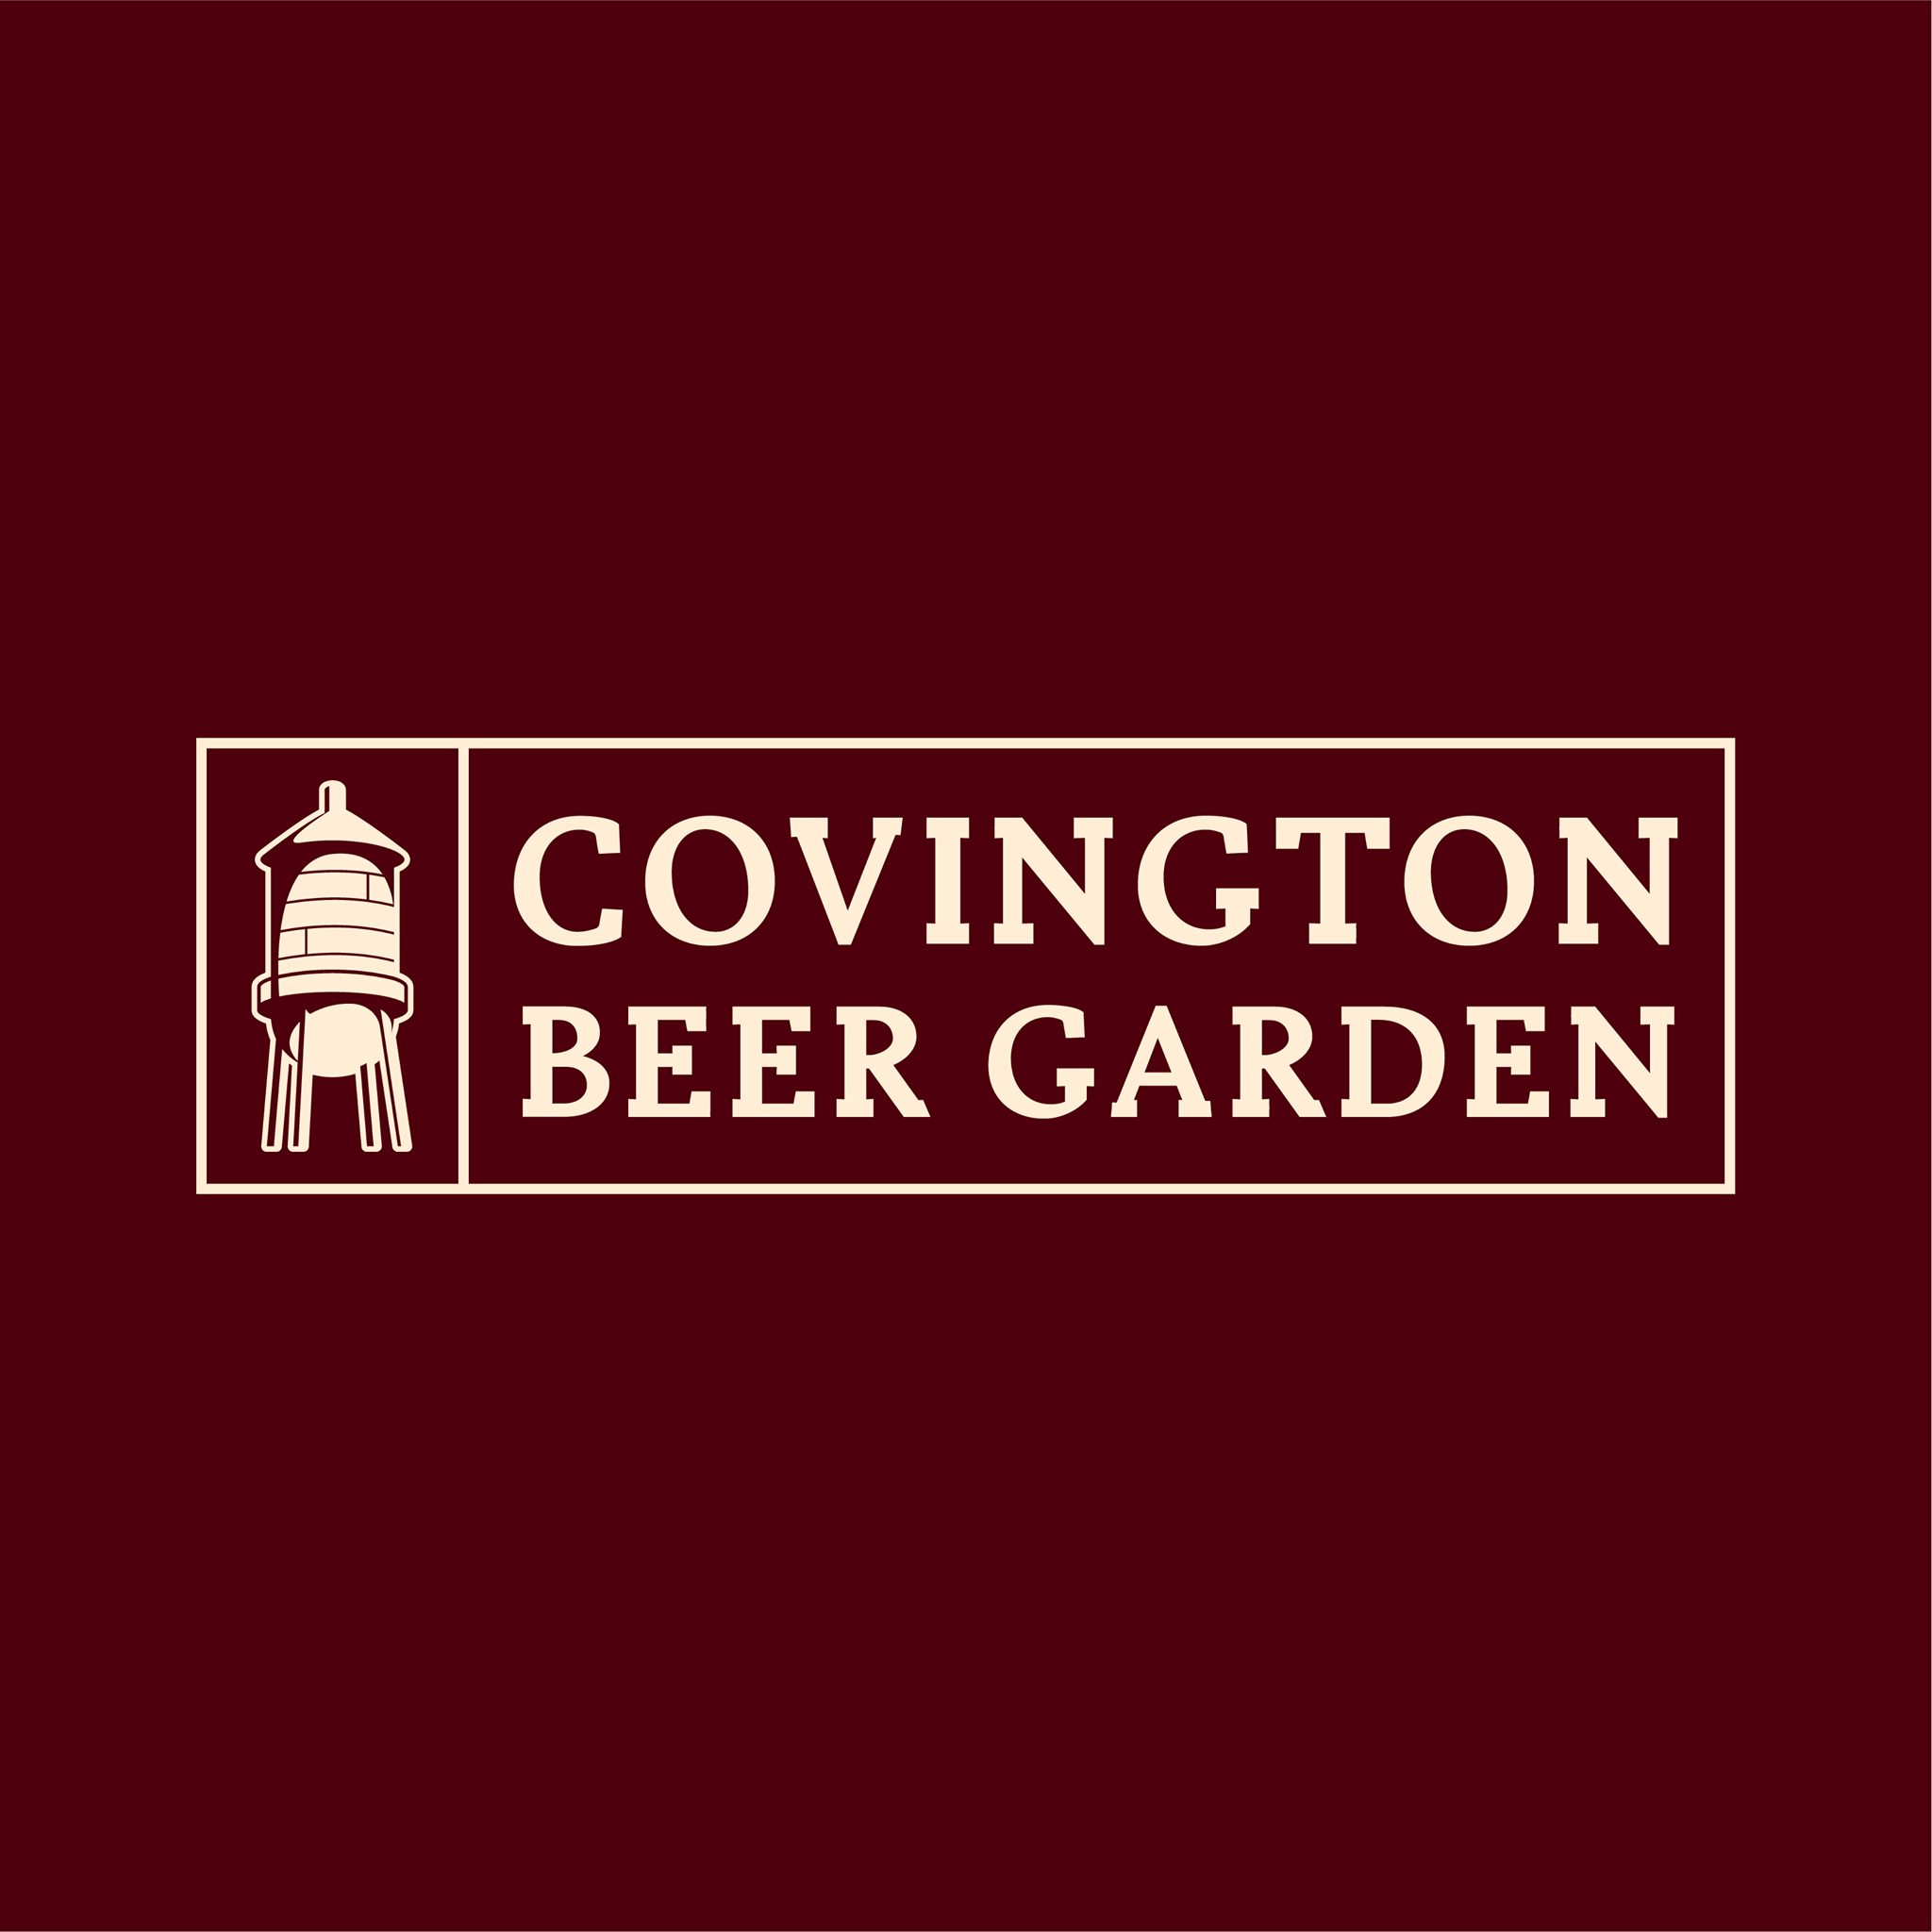 Covington Beer Garden logo scroll